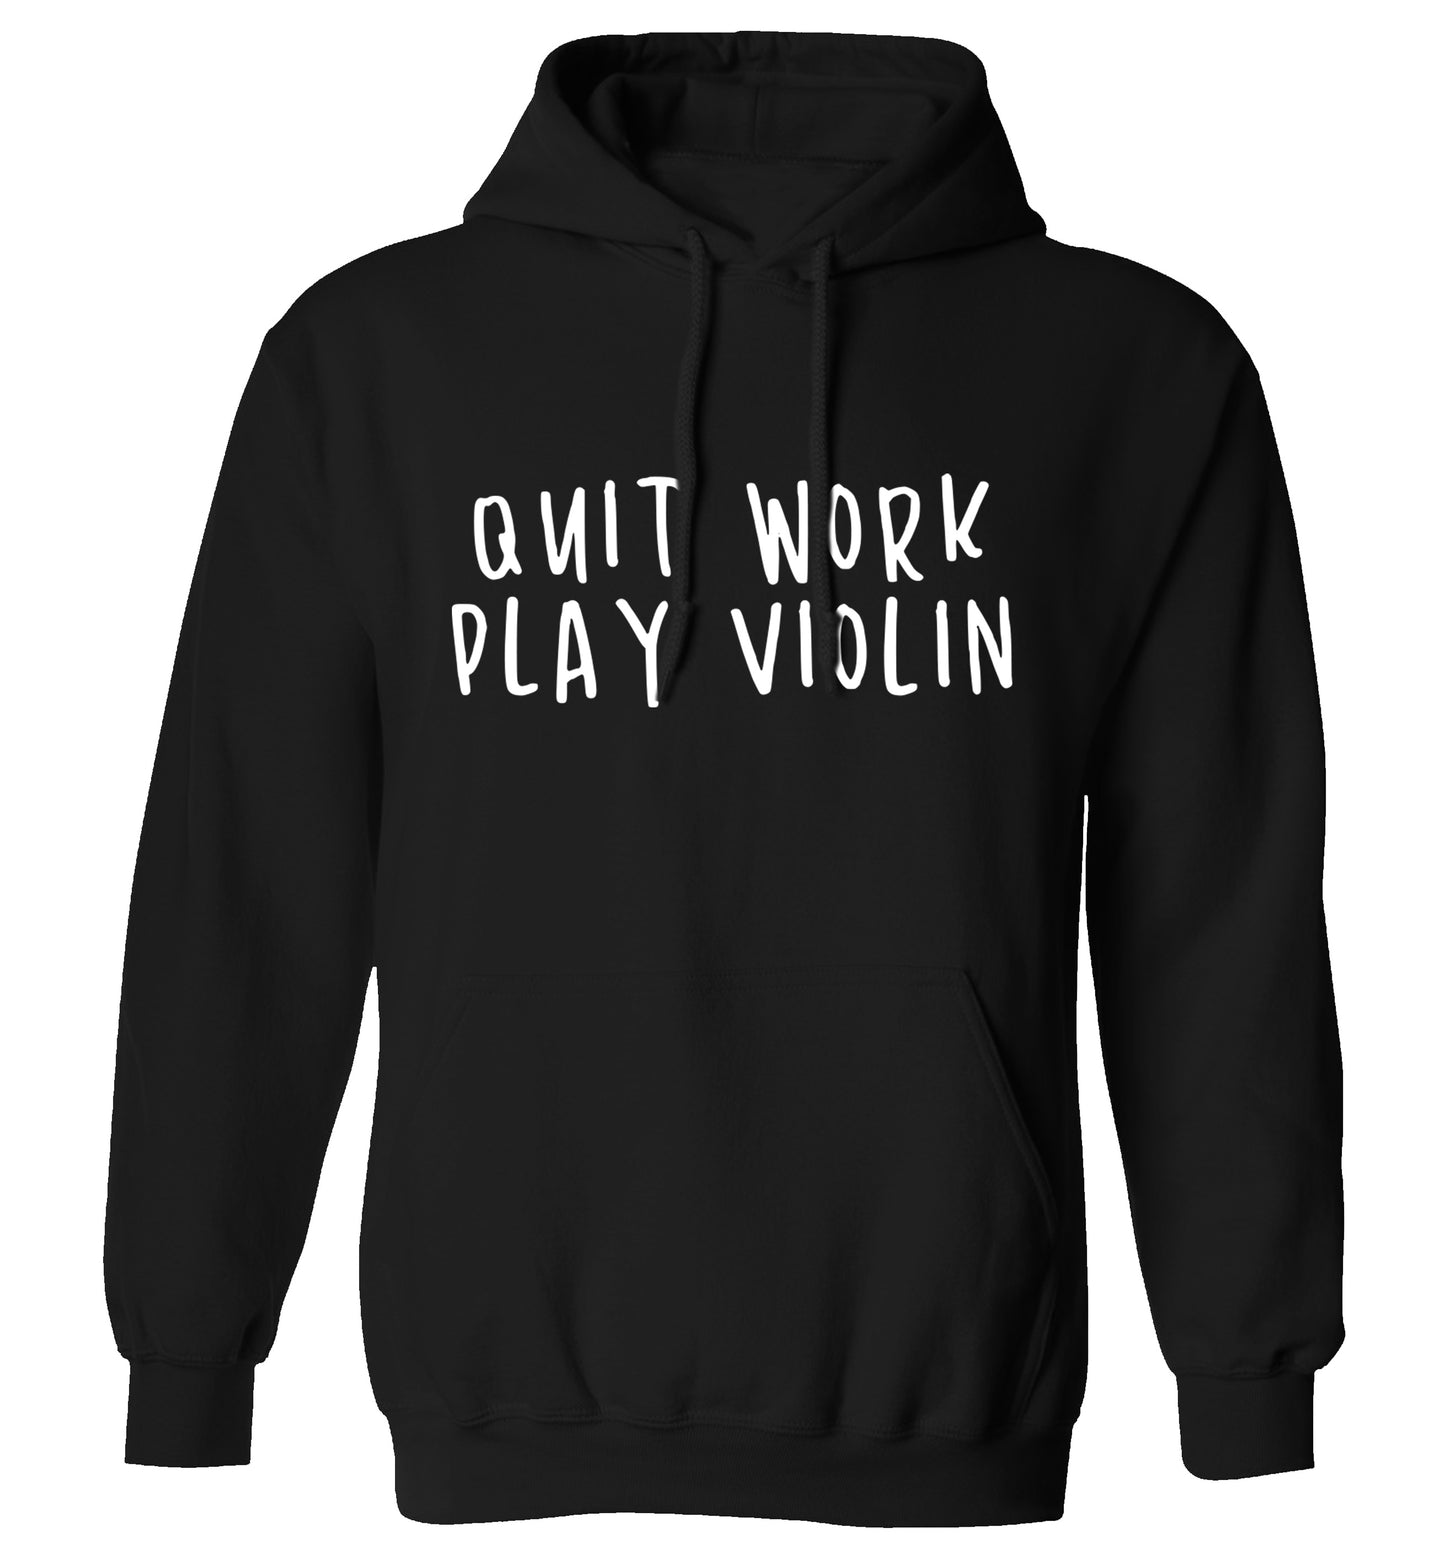 Quit work play violin adults unisex black hoodie 2XL